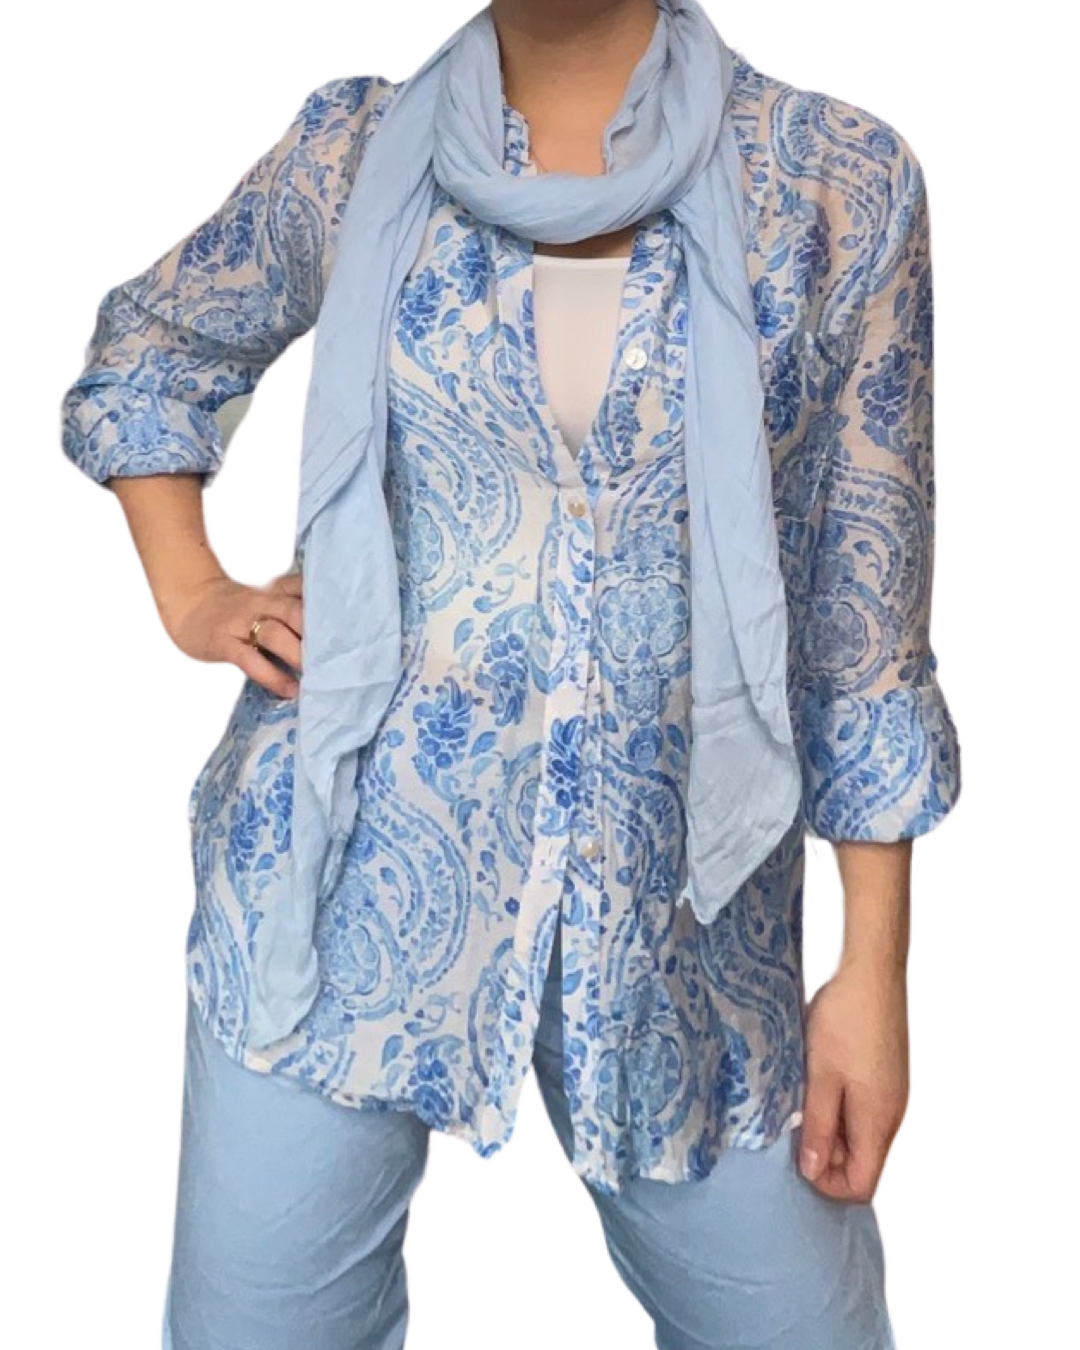 Chemise blanche pour femme imprimé de motifs floraux avec camisole, foulard et pantalons bleu ciel.